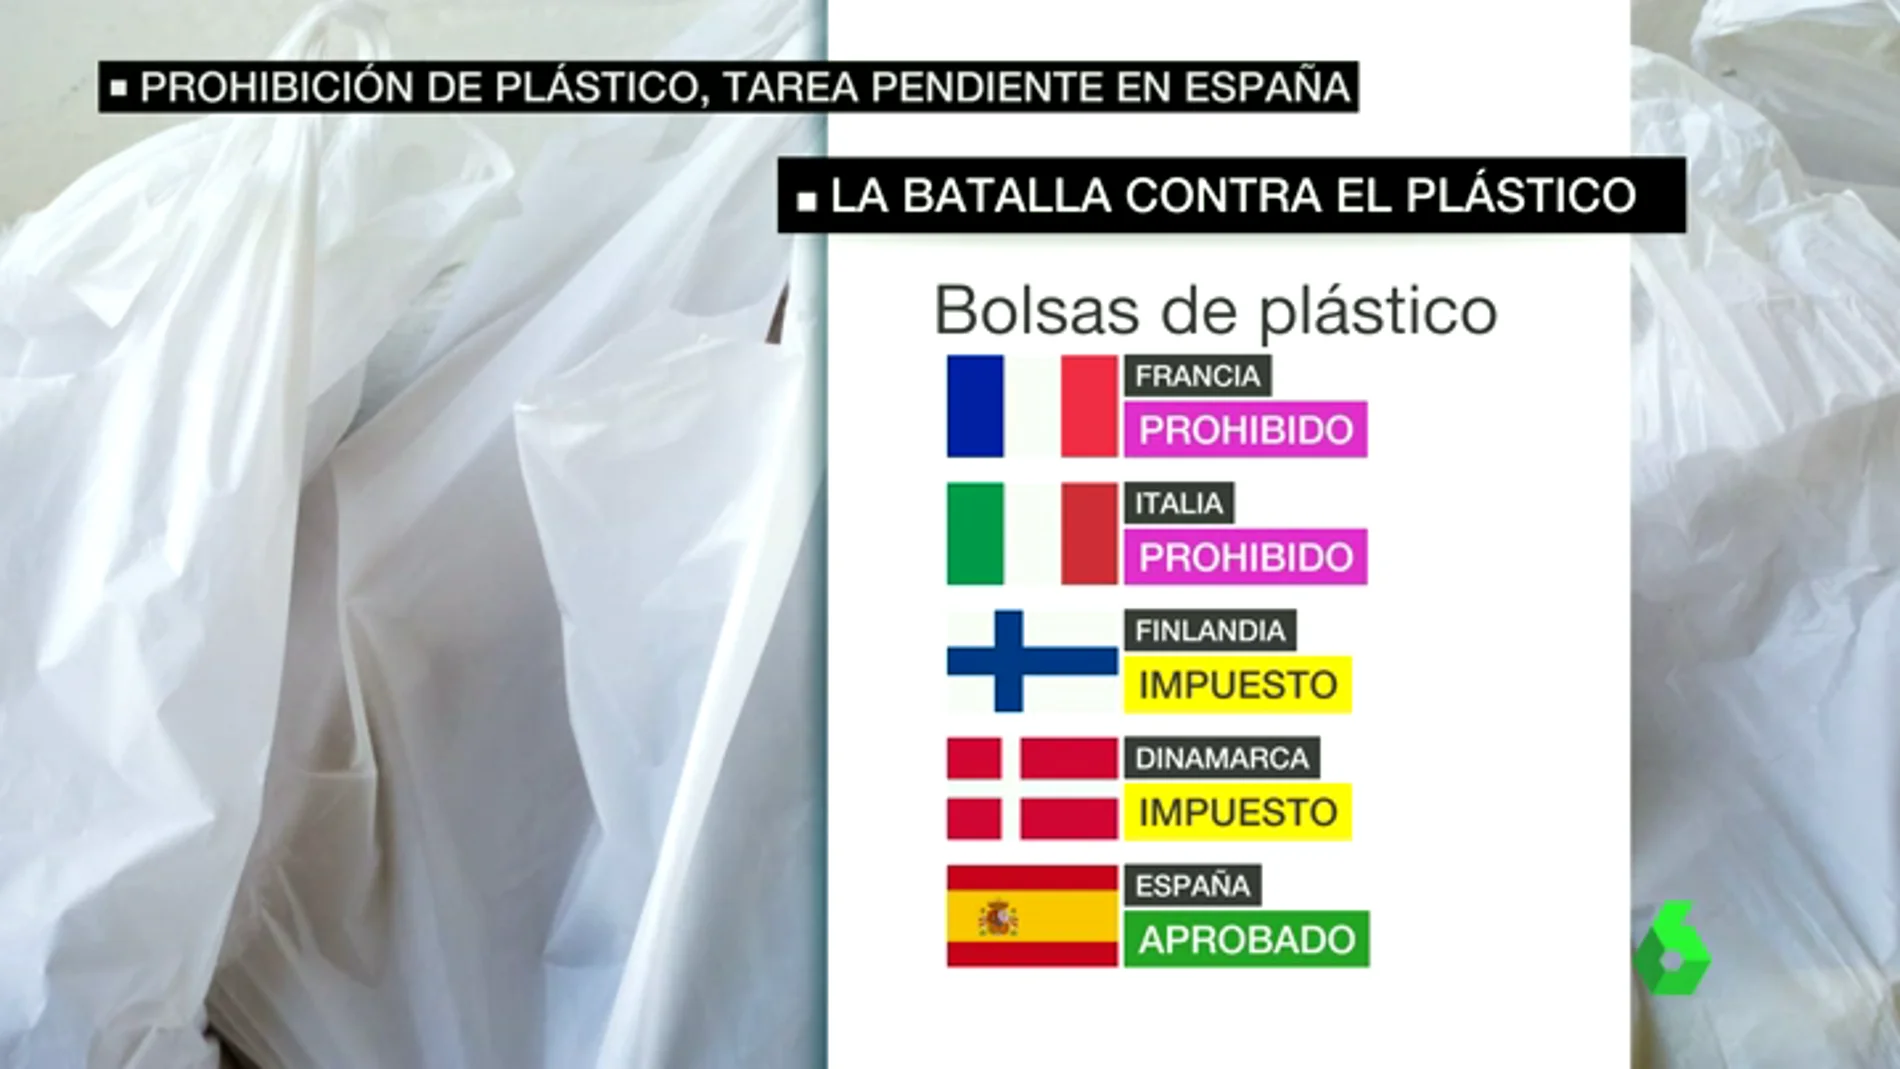 Frame 35.602195 de: España se atrasa en la lucha contra el plásico, se consumen 133 bolsas de plástico por persona frente a los cuatro de Dinamarca